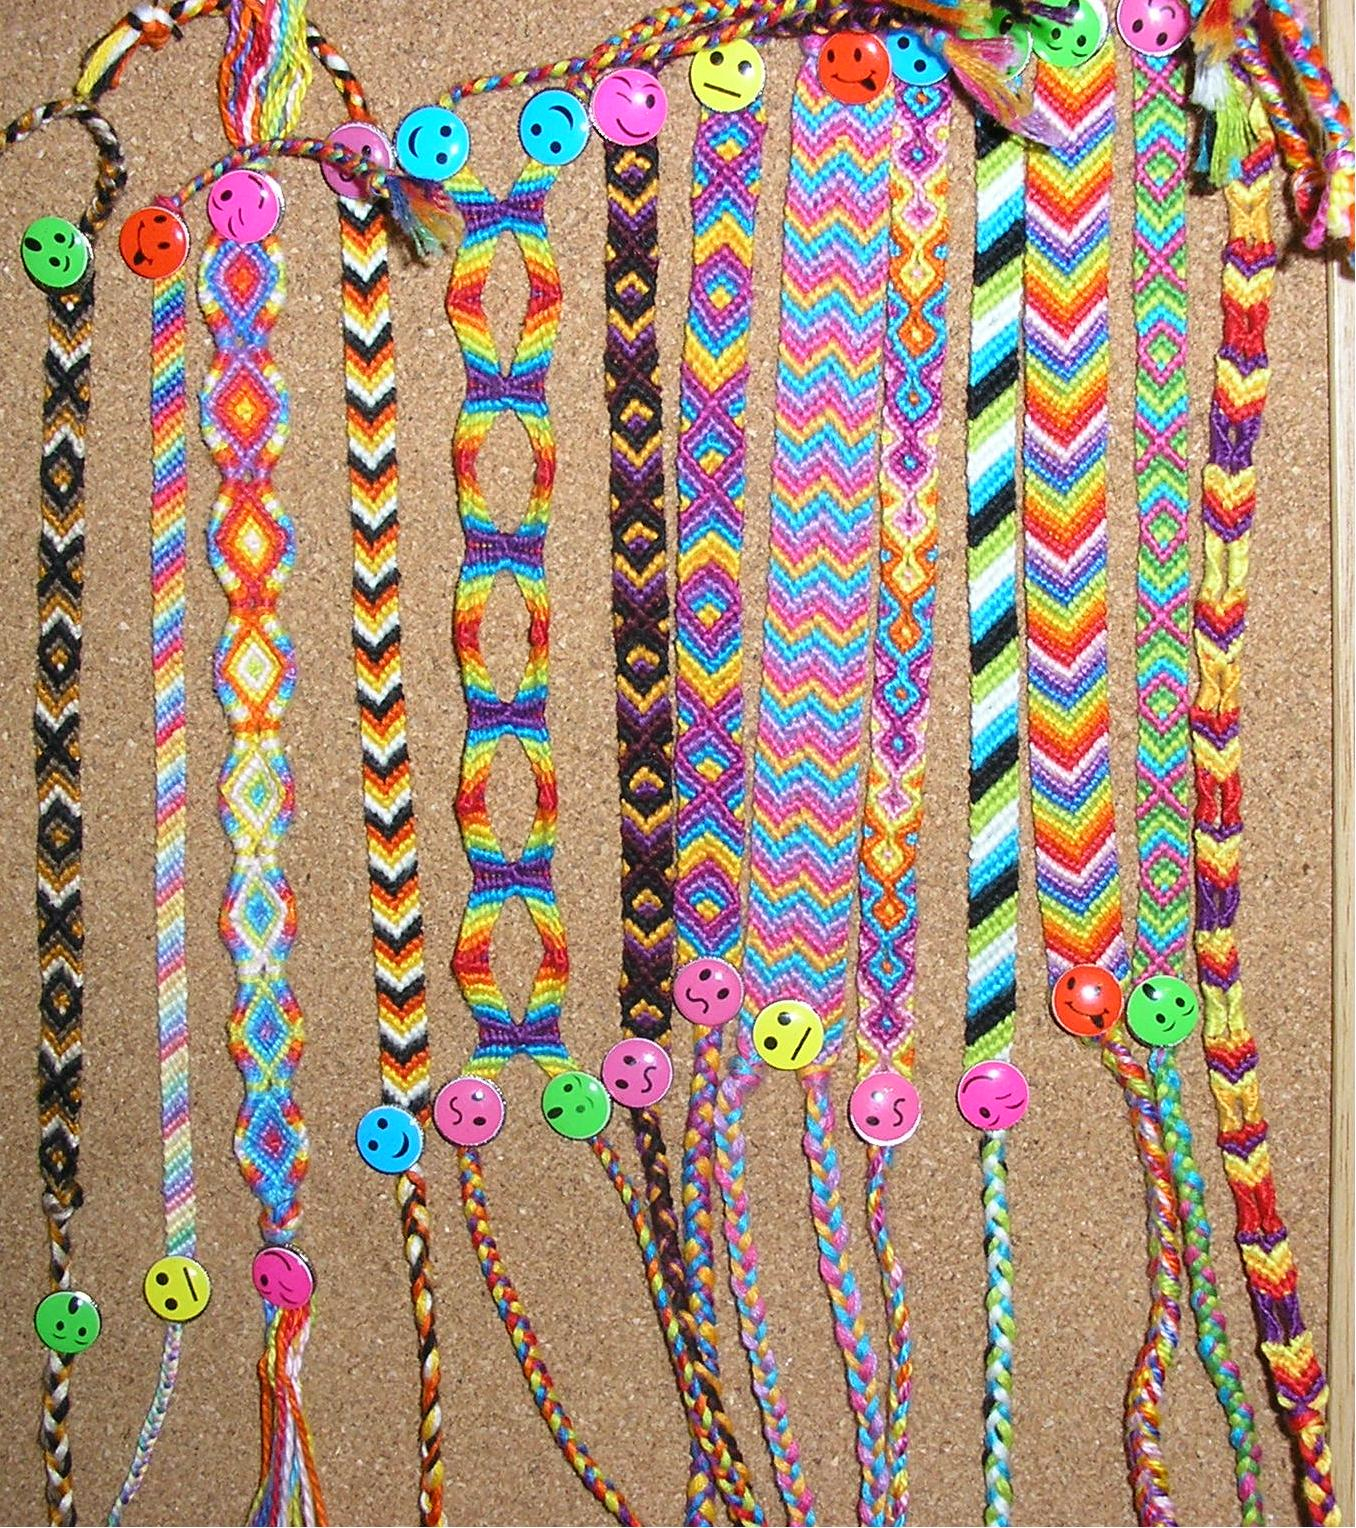 Embroidery Bracelets Patterns 6 String Friendship Bracelet Patterns Page 3 Medical Bracelets